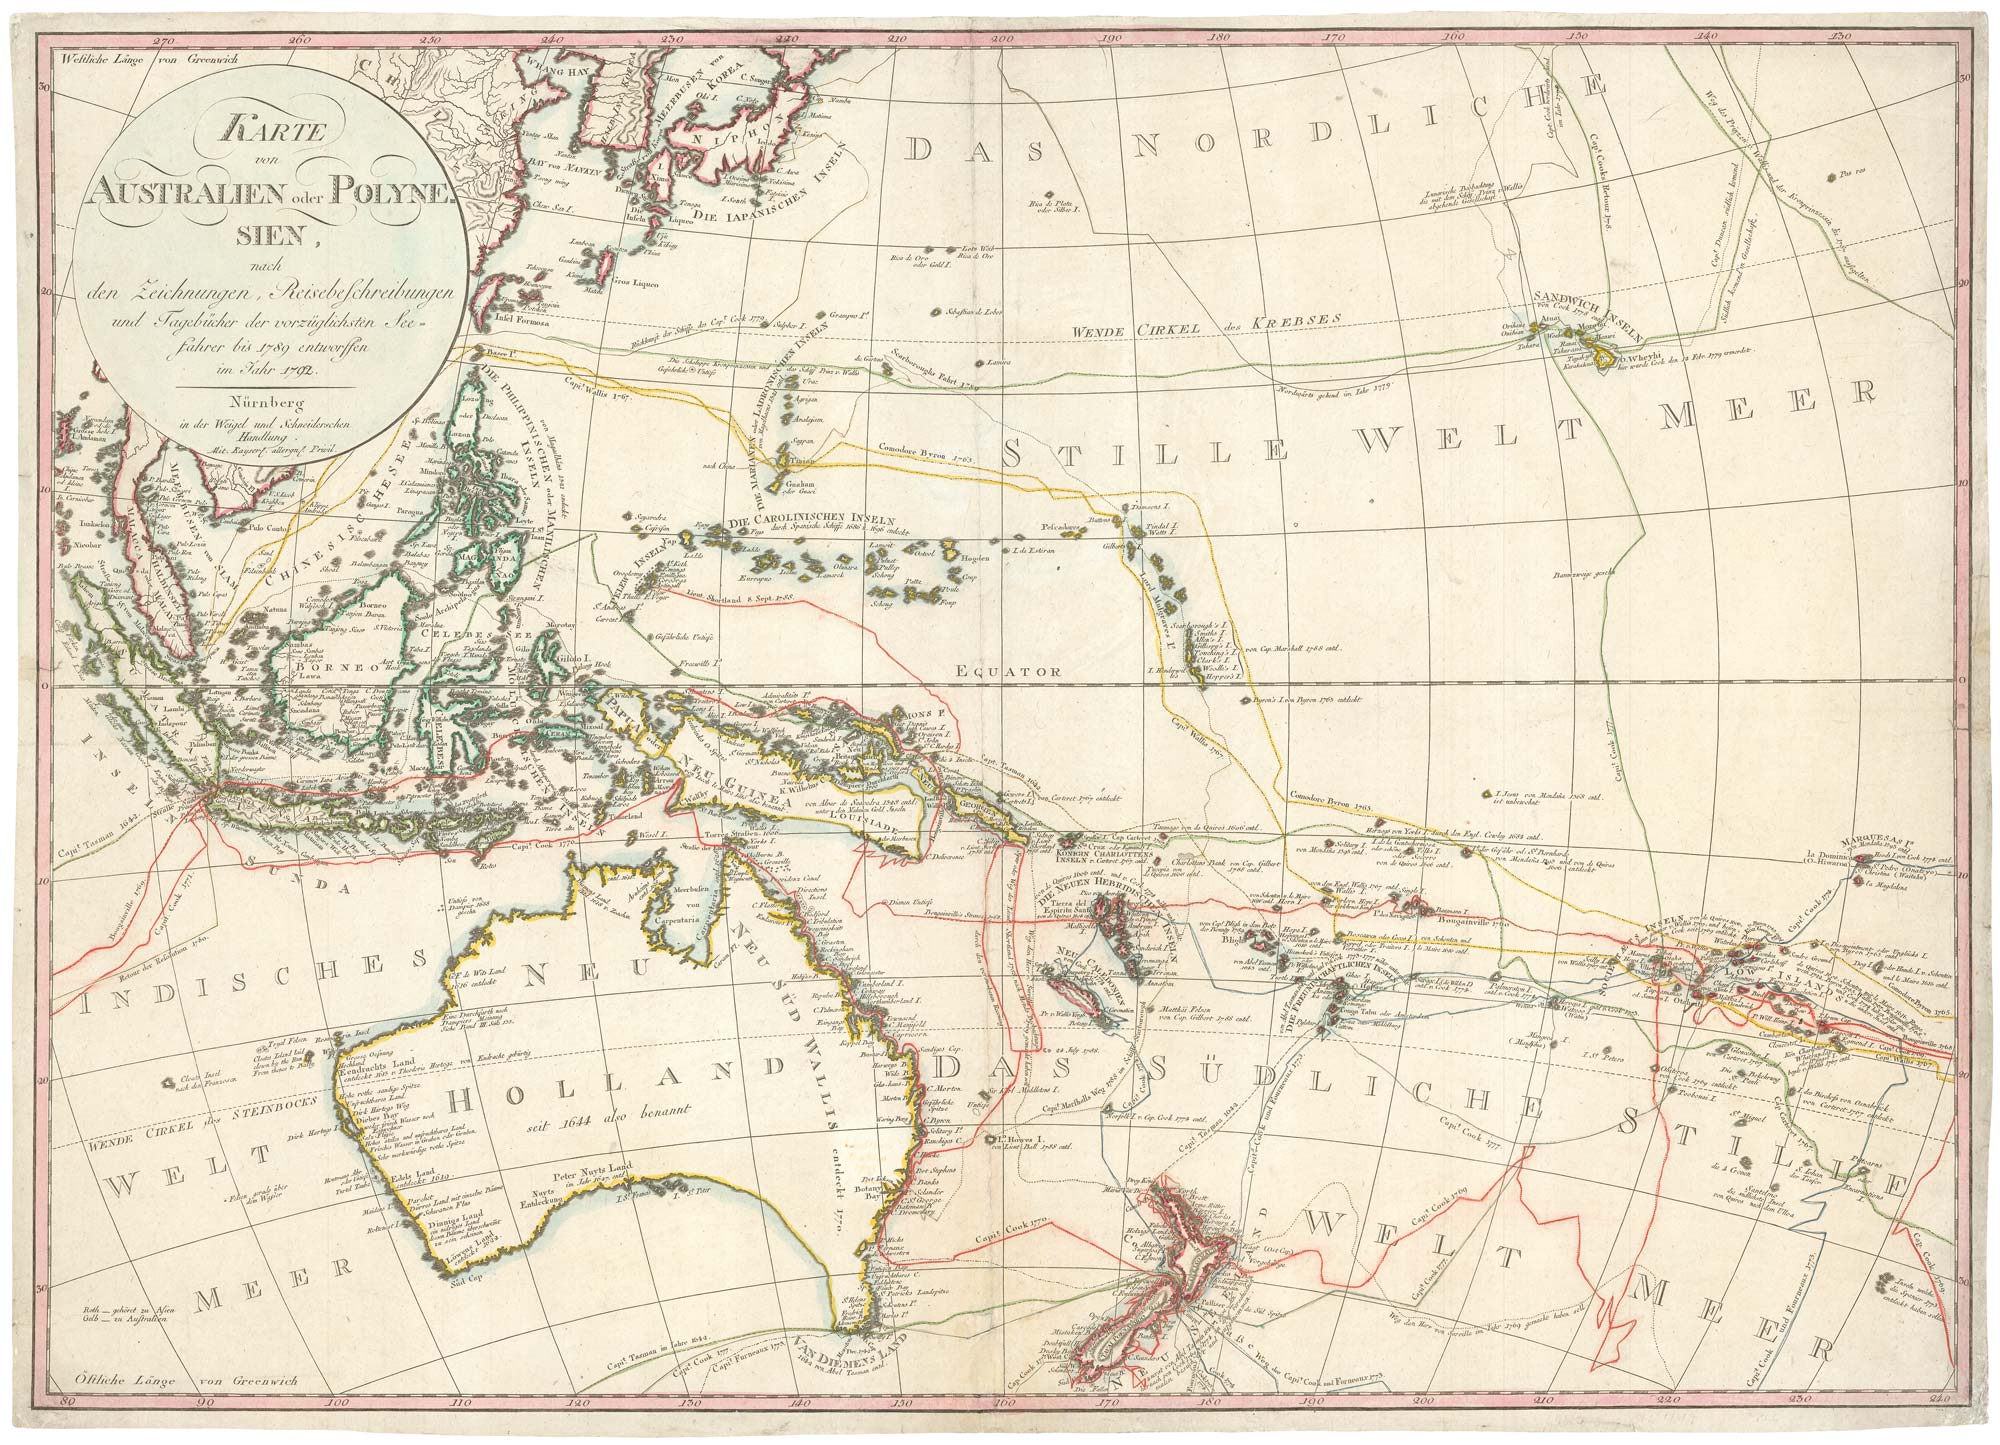 Karte von Australien oder Polynesien